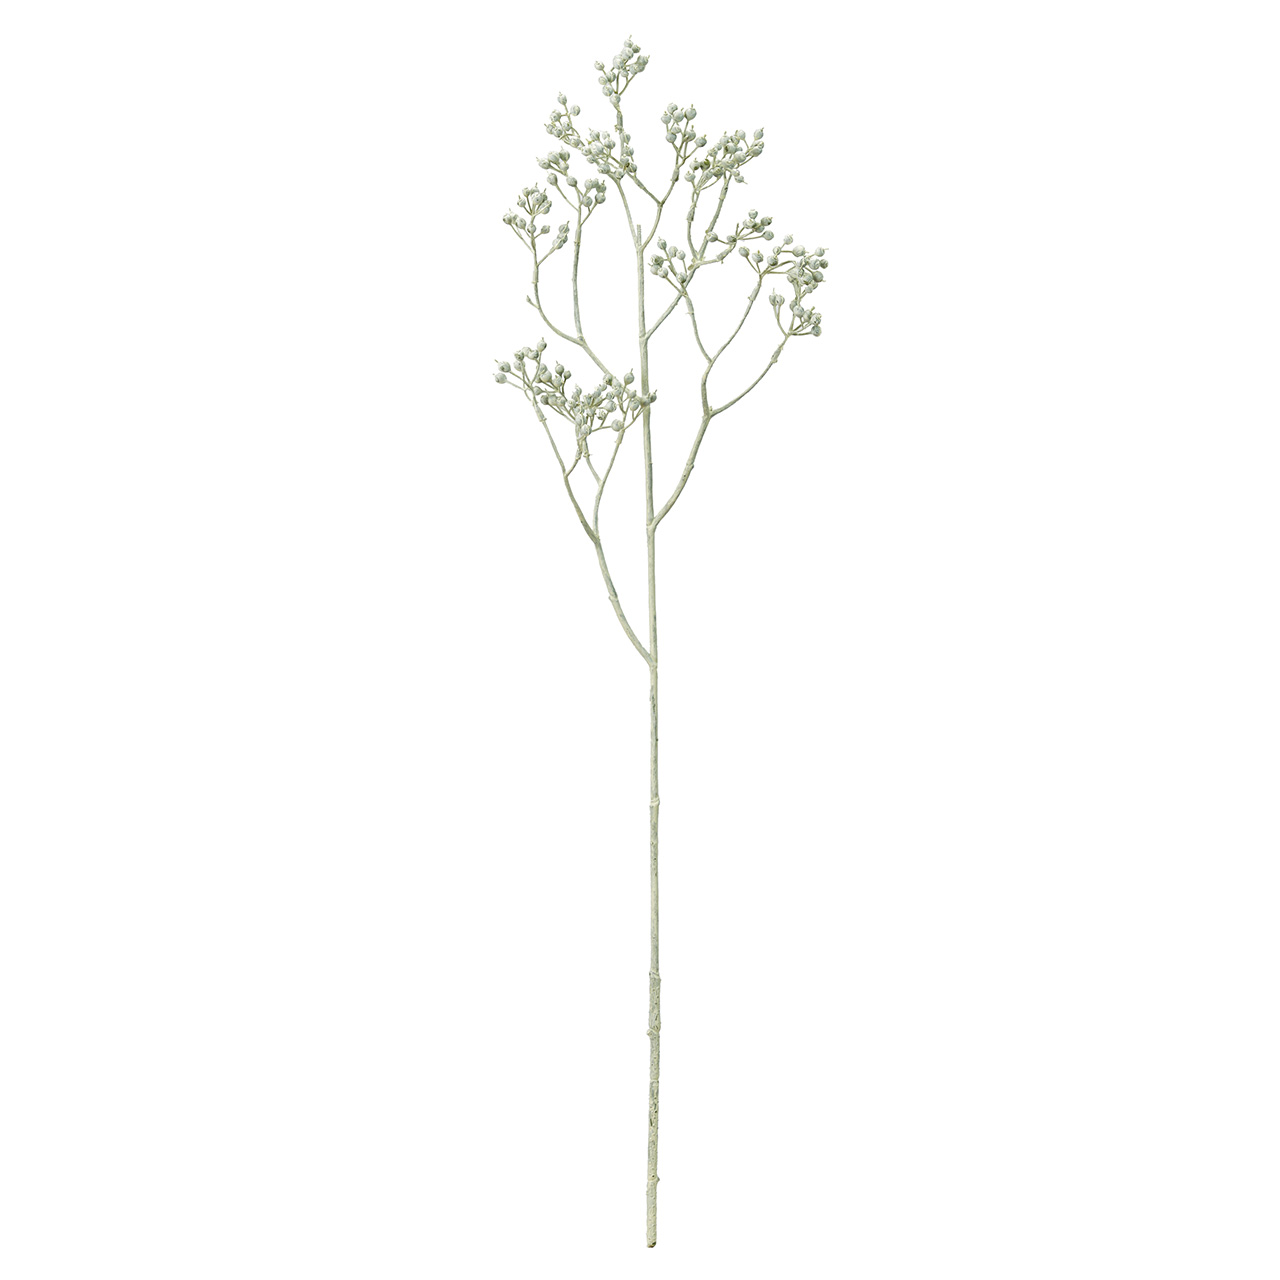 MAGIQ　グレジュリーローズヒップ　ホワイトグリーン　アーティフィシャルグリーン　造花　実もの　ベリー　FM002727-022